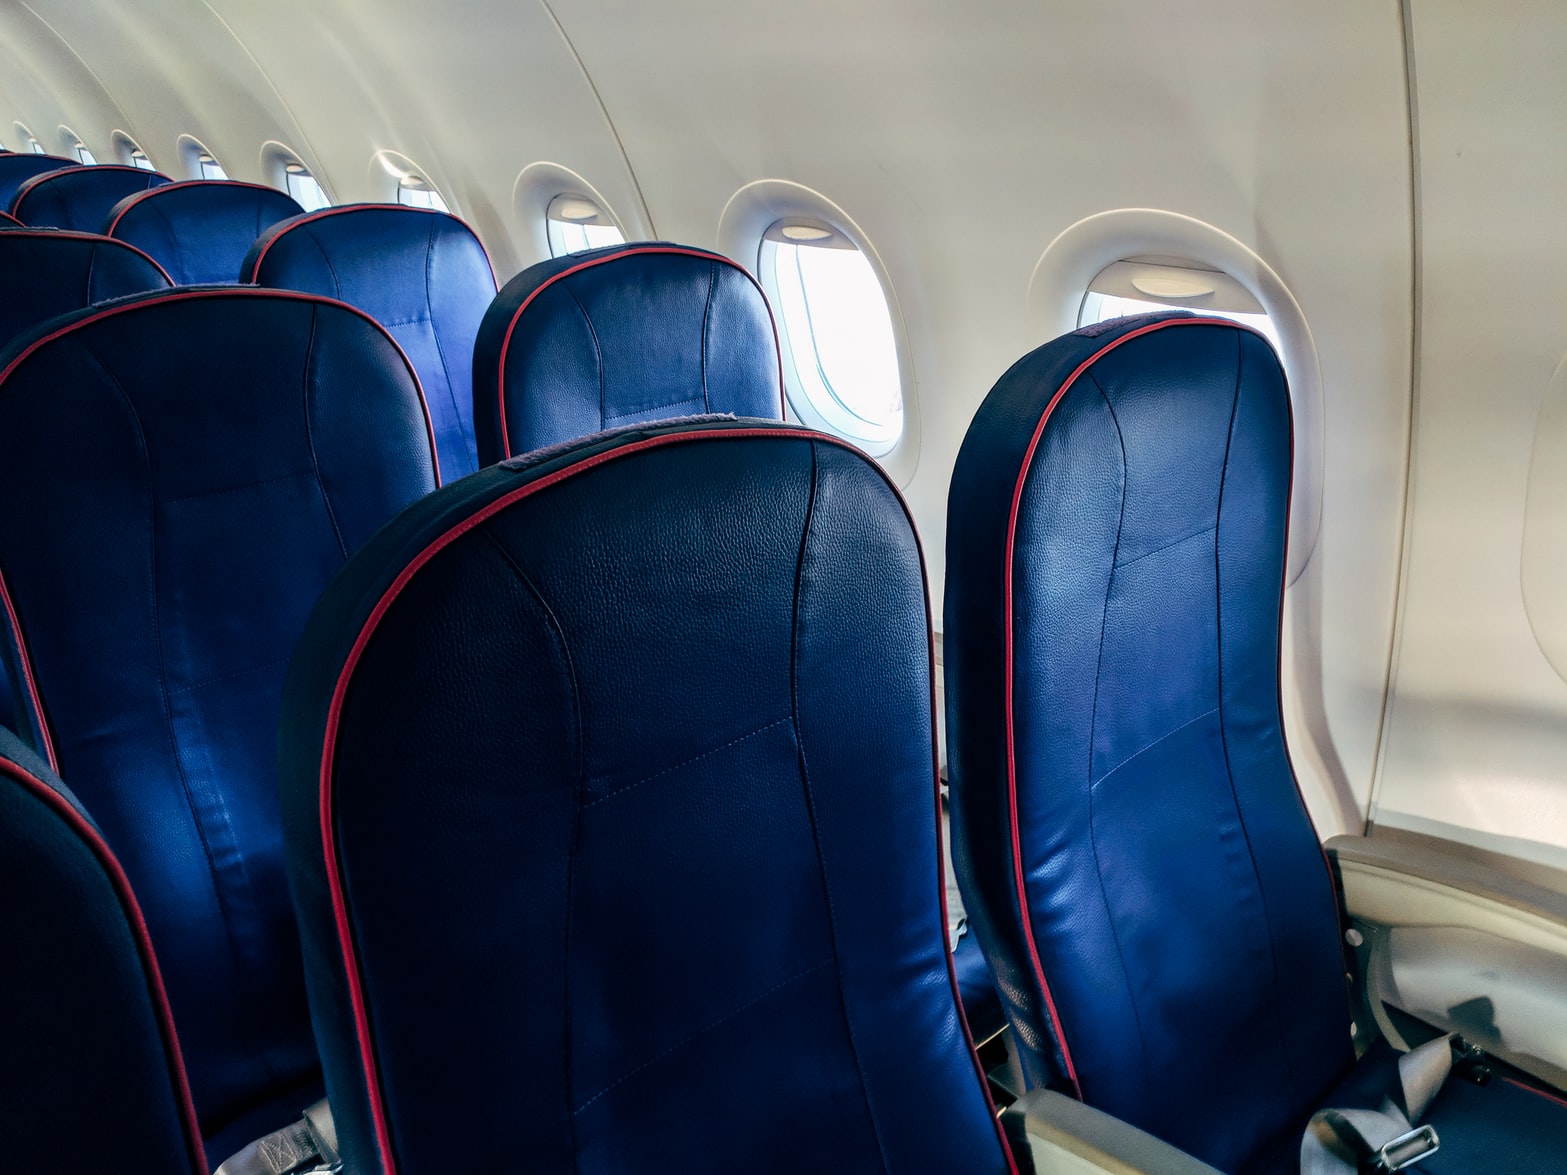 Убедительная причина не откидывать резко спинку сиденья в самолете